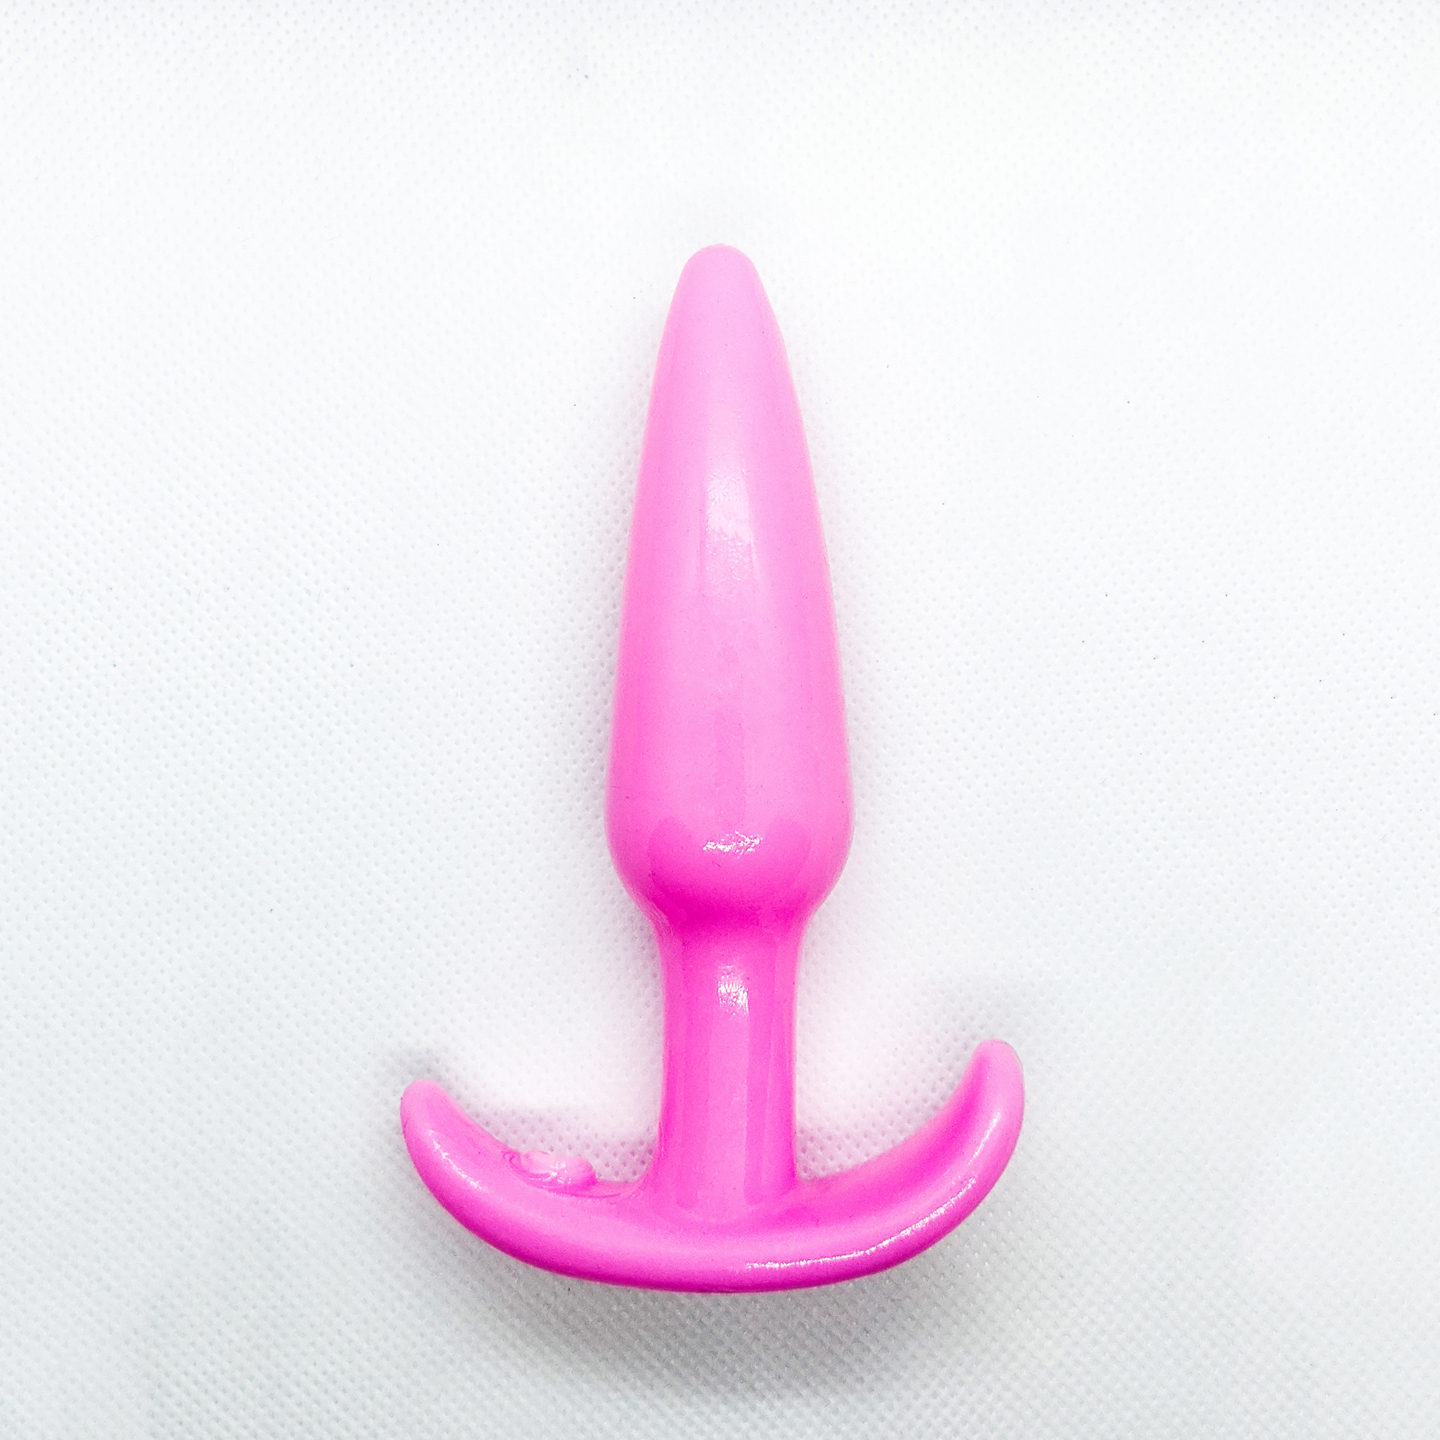 Pink - beginner anal toy